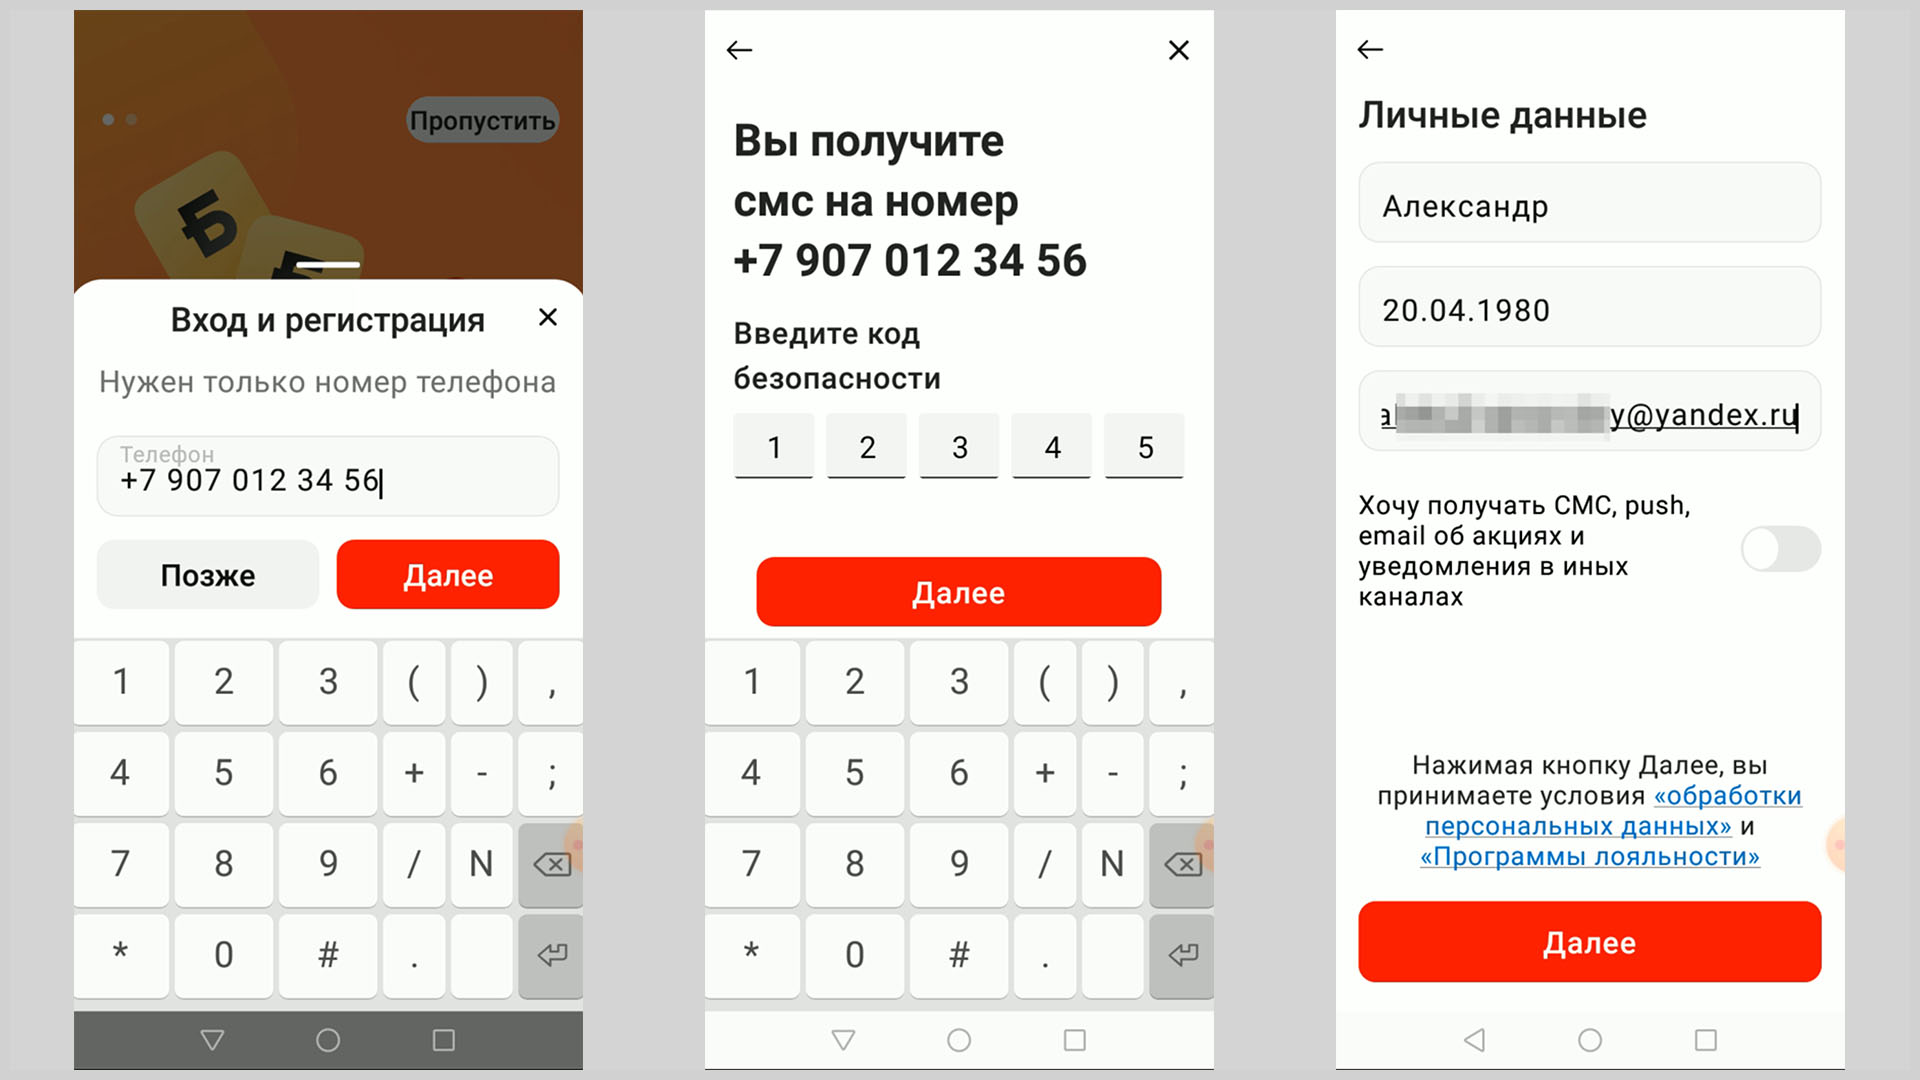 Скриншоты экрана смартфона иллюстрирующие авторизацию в приложении «Магнит».